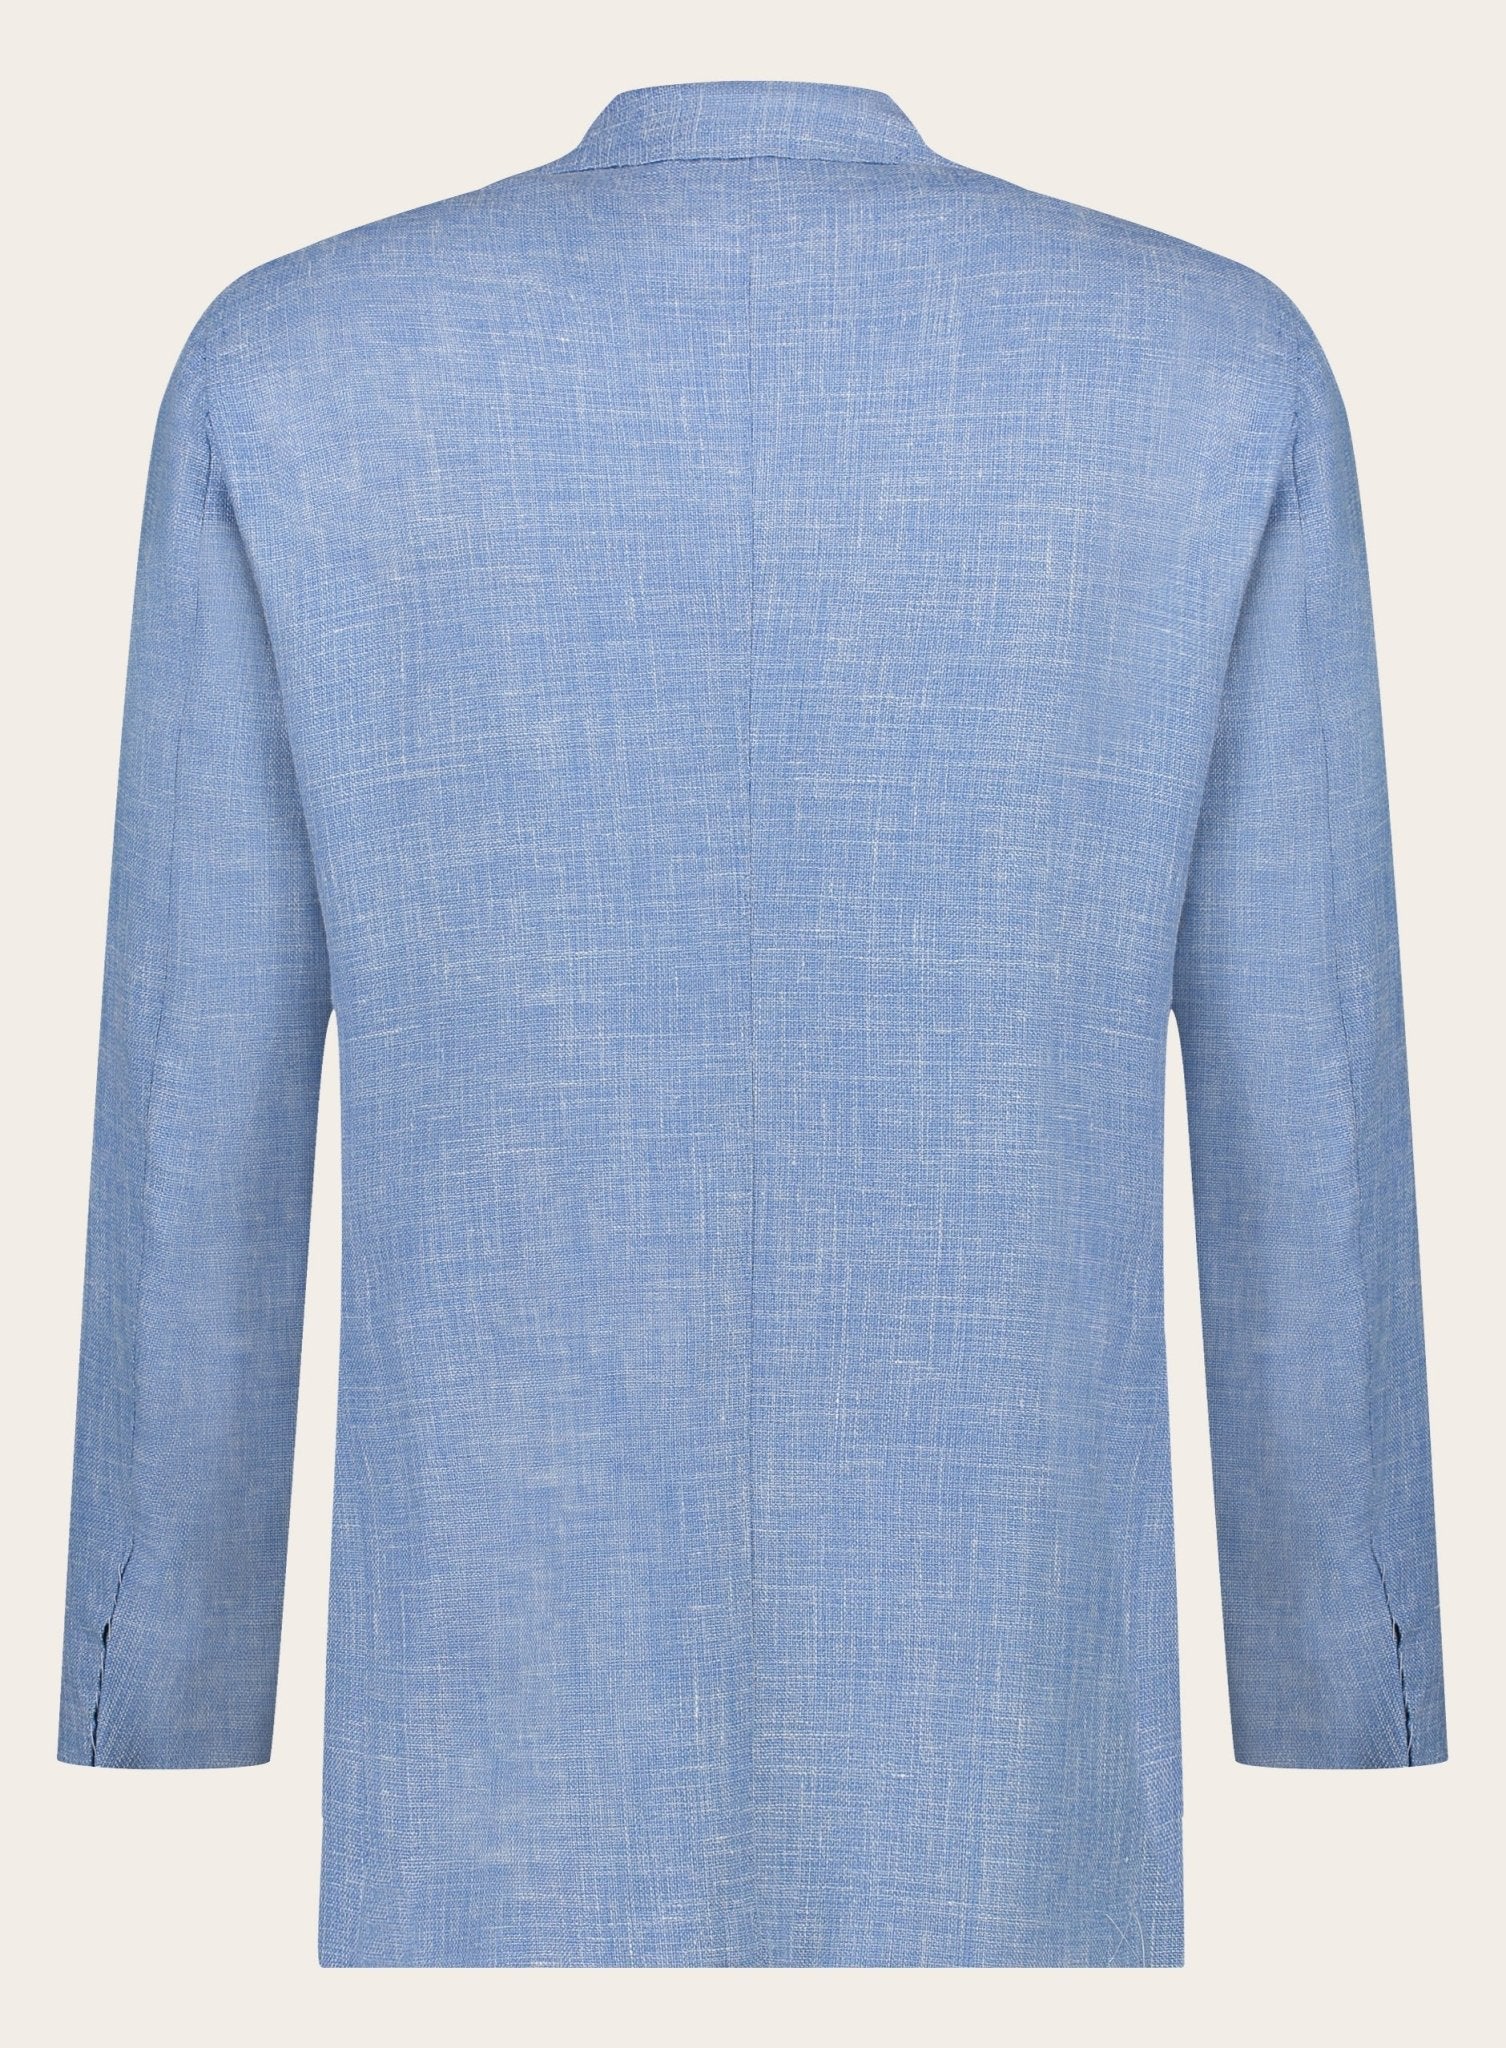 Handgemaakt jasje van wol en linnen | L.Blauw